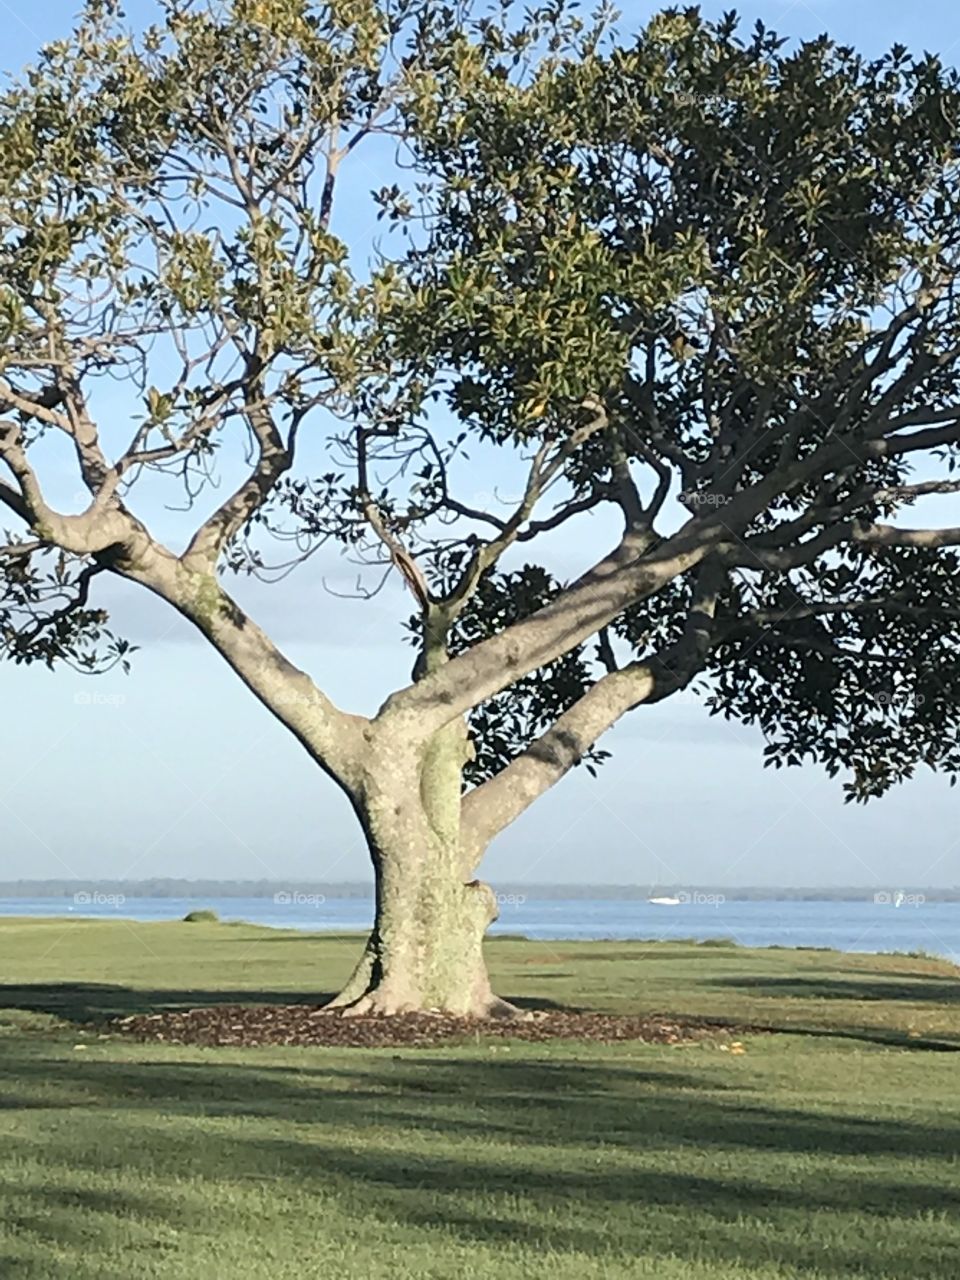 Tree, ocean